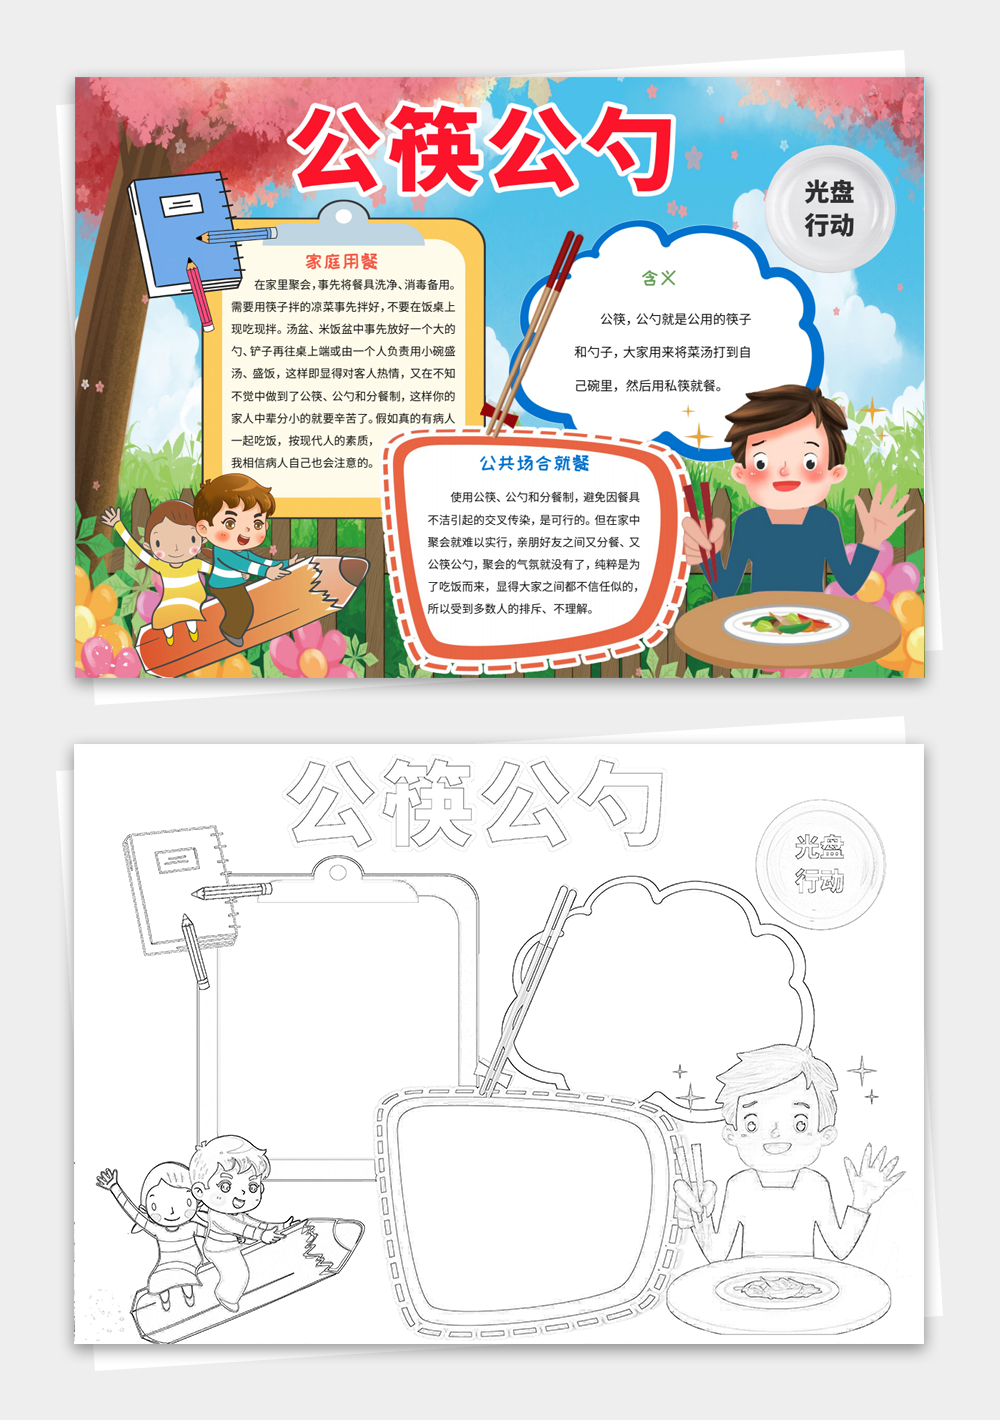 公筷公勺手抄报环保健康宣传手抄报设计模板